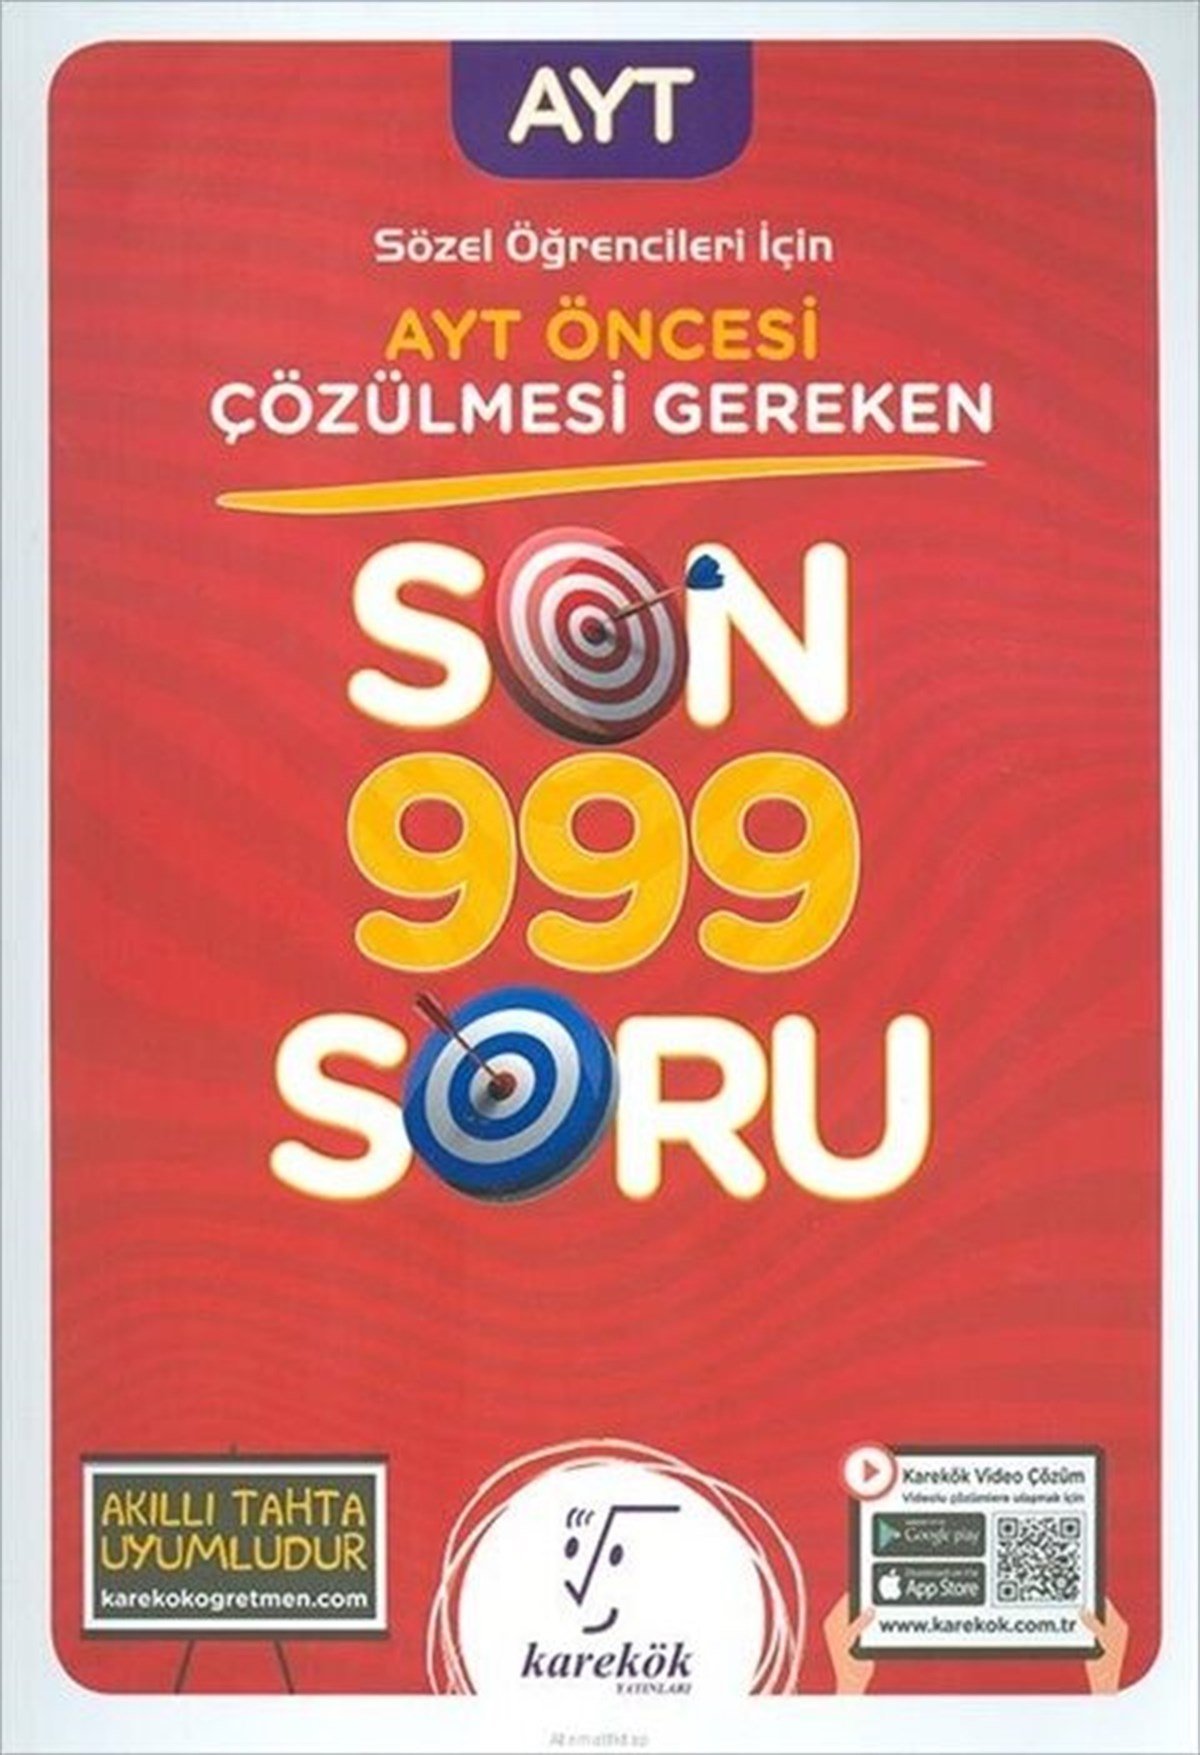 Karekök Yayınları AYT Öncesi Çözülmesi Gereken Sözel Son 999 Soru 210,00 ₺